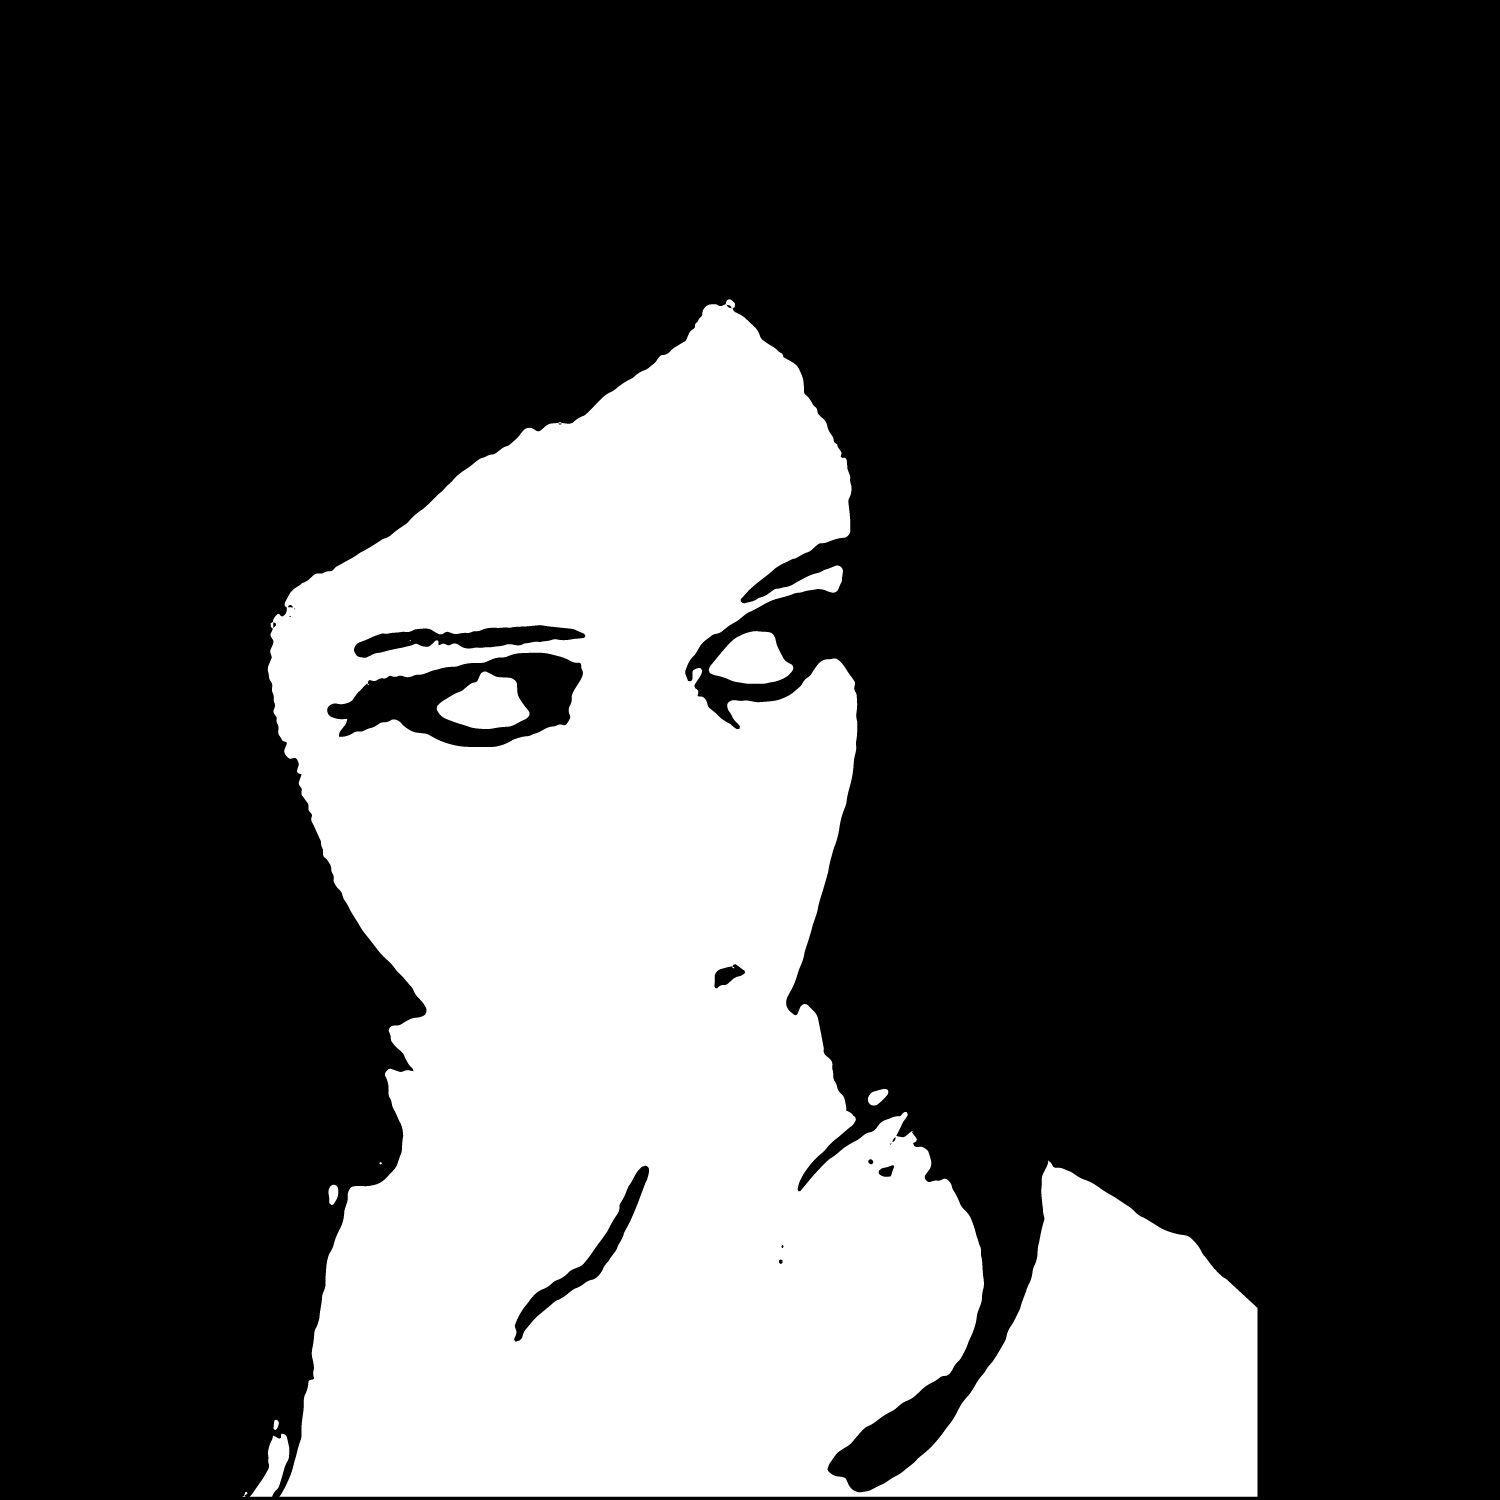 Player sematary avatar